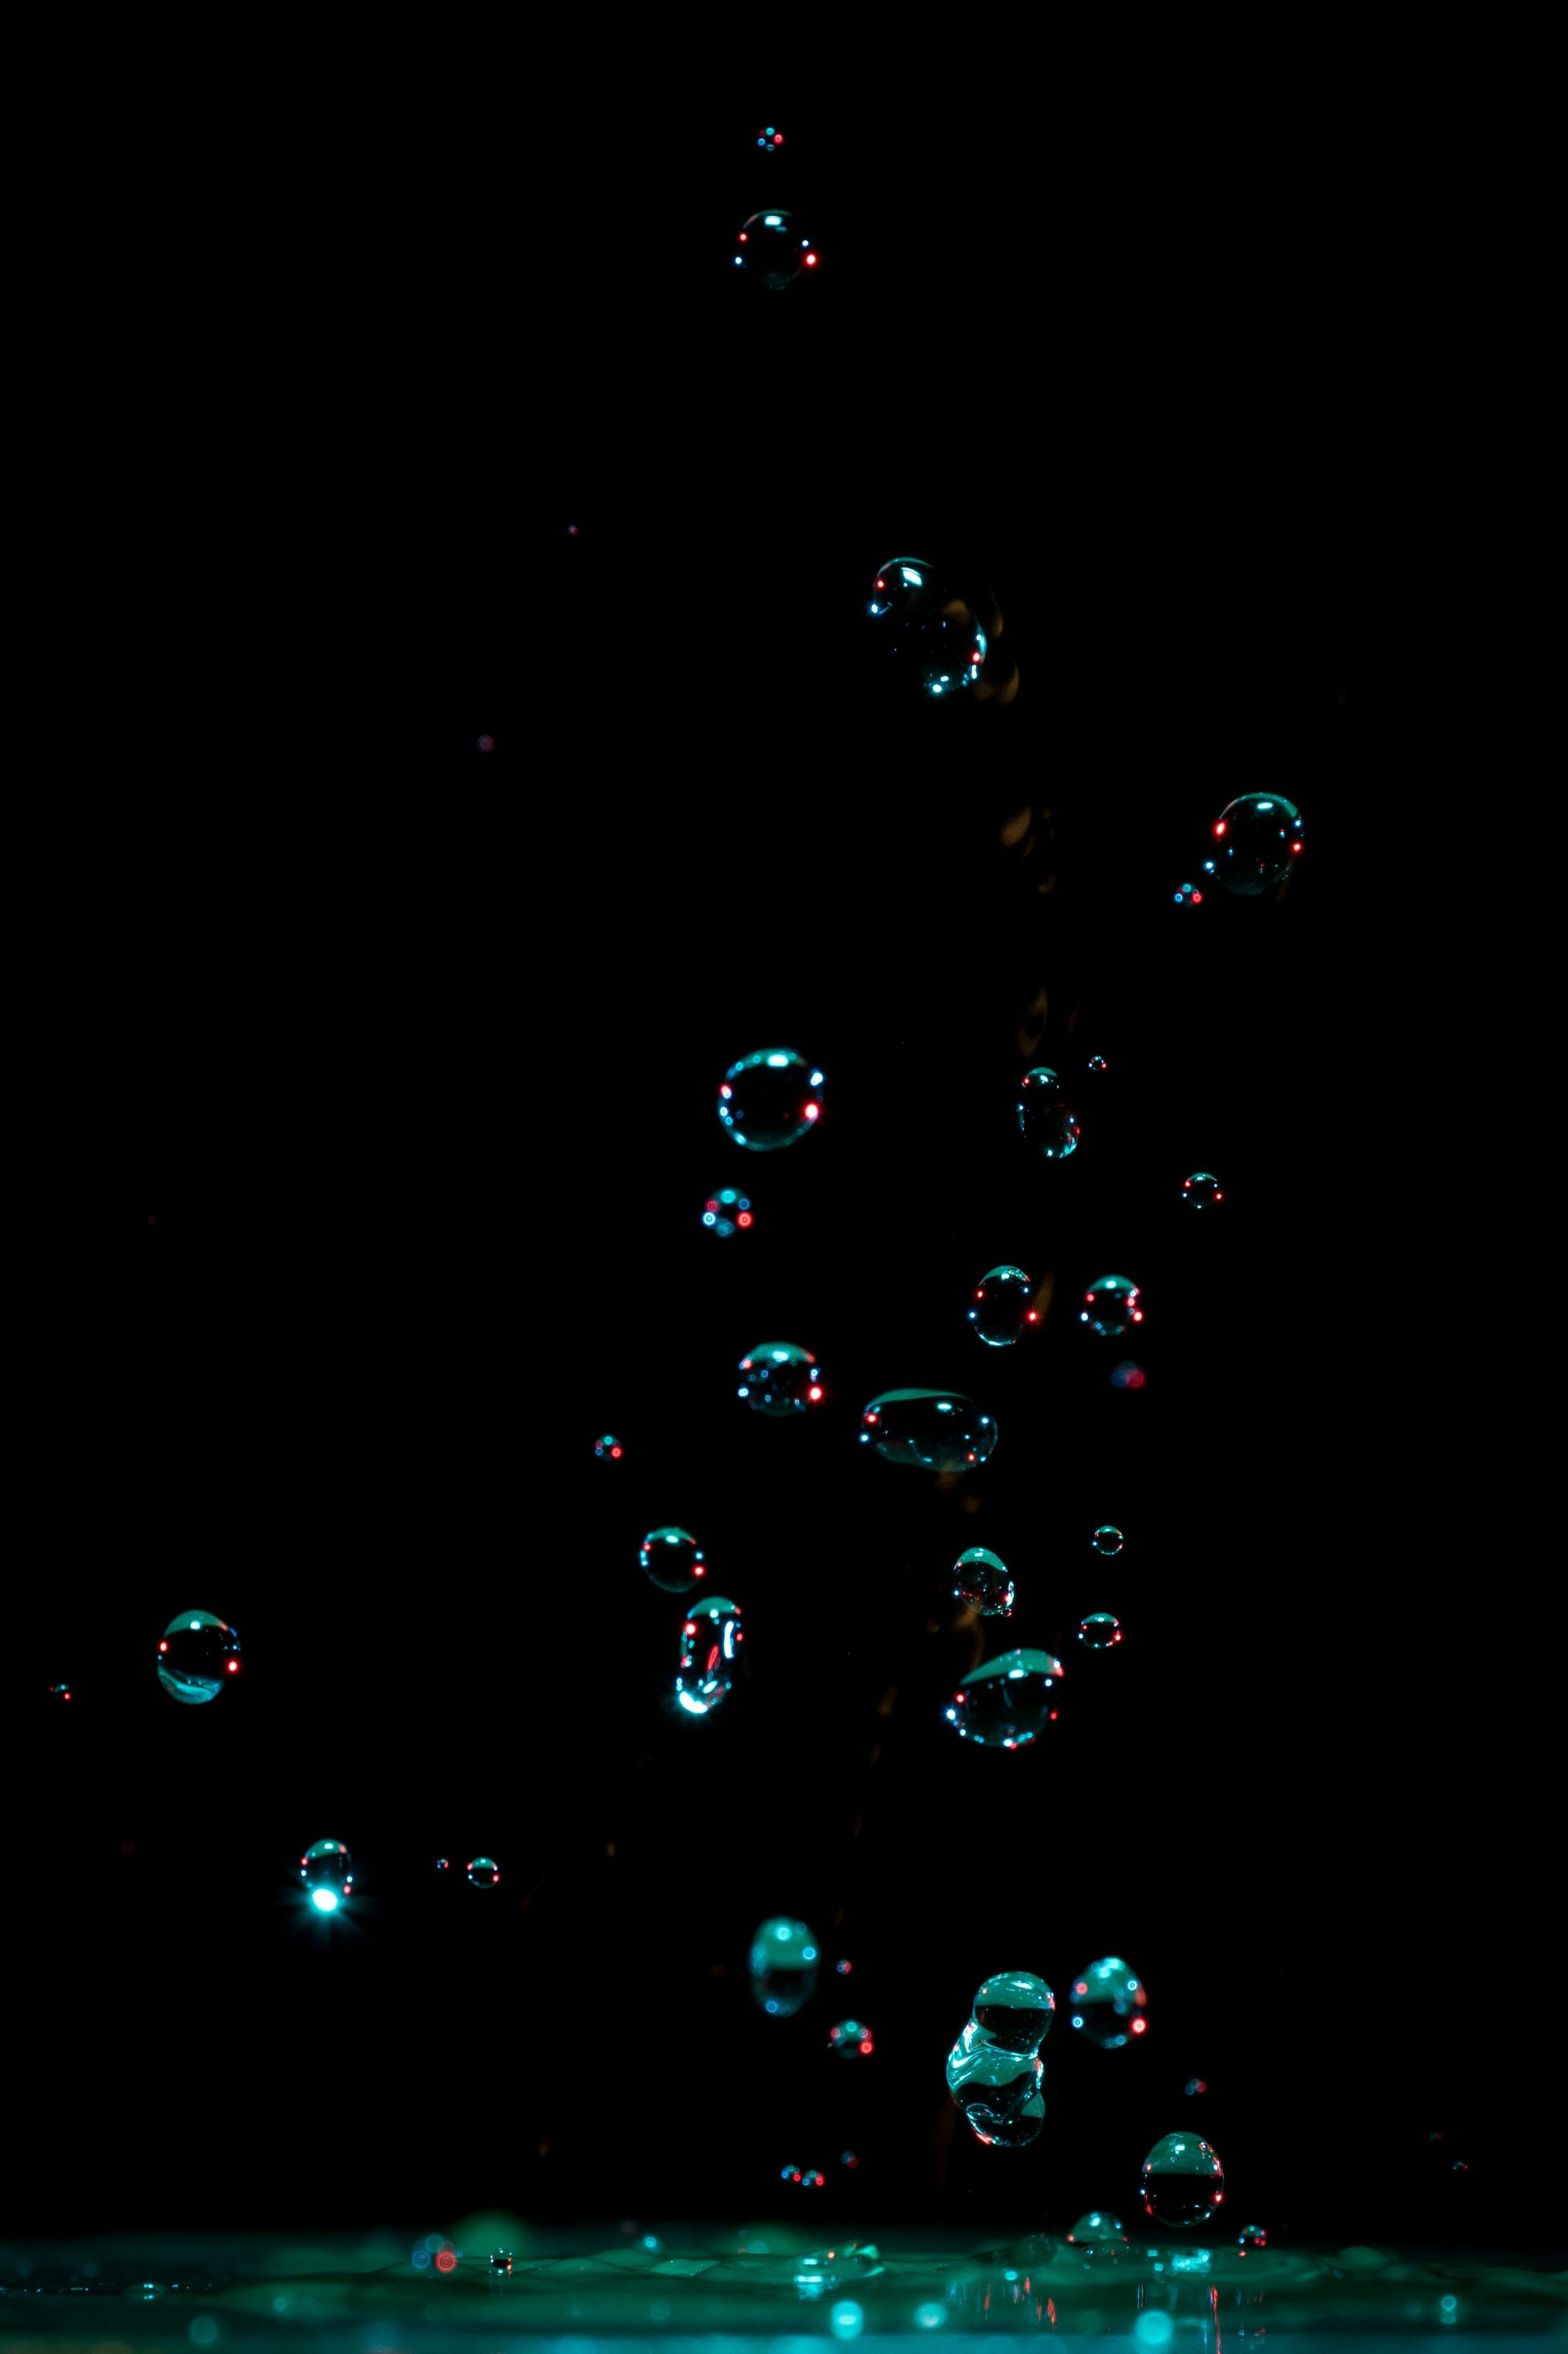 Bubbles Wallpaper 4K, AMOLED, Liquid, Black background